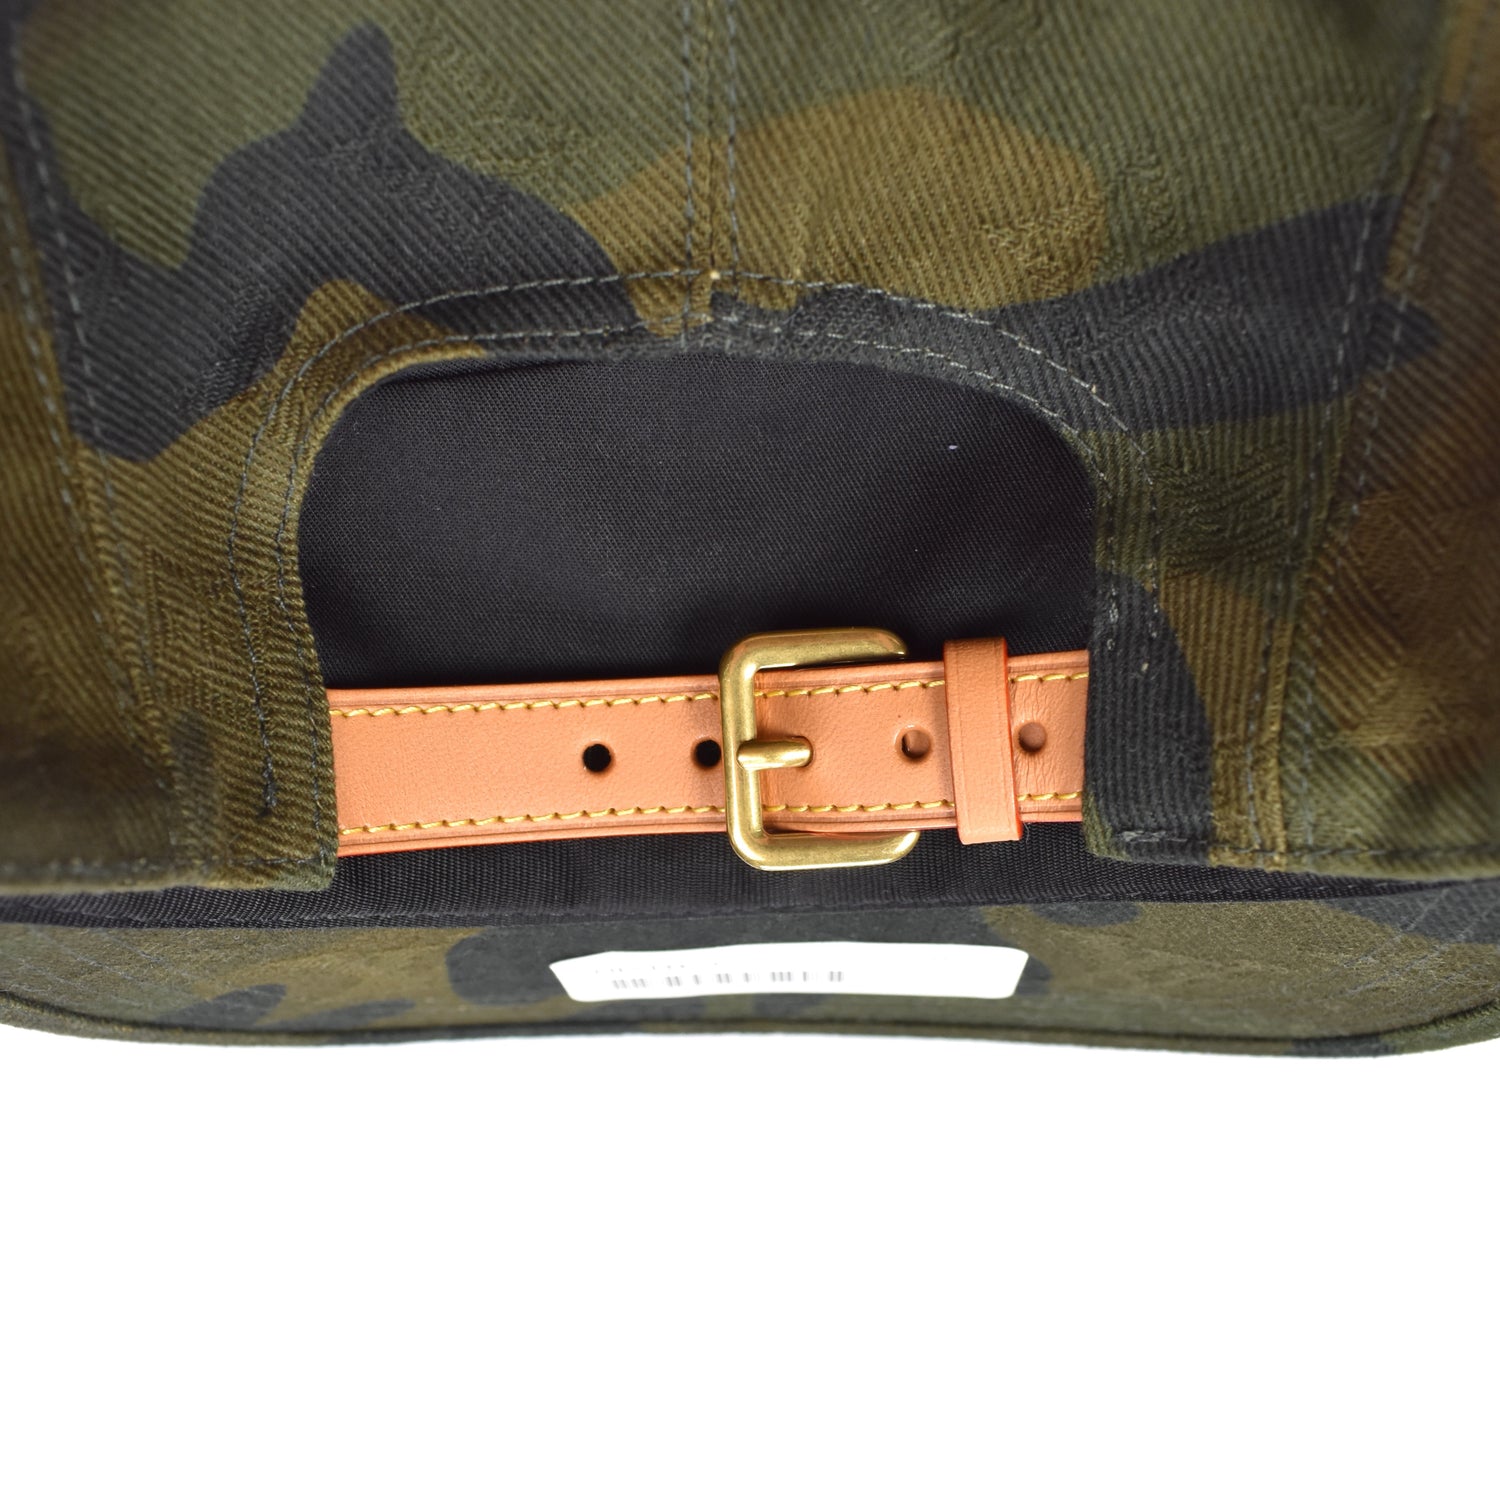 Cap Louis Vuitton Supreme Hoodie Hat, PNG, 1000x600px, Cap